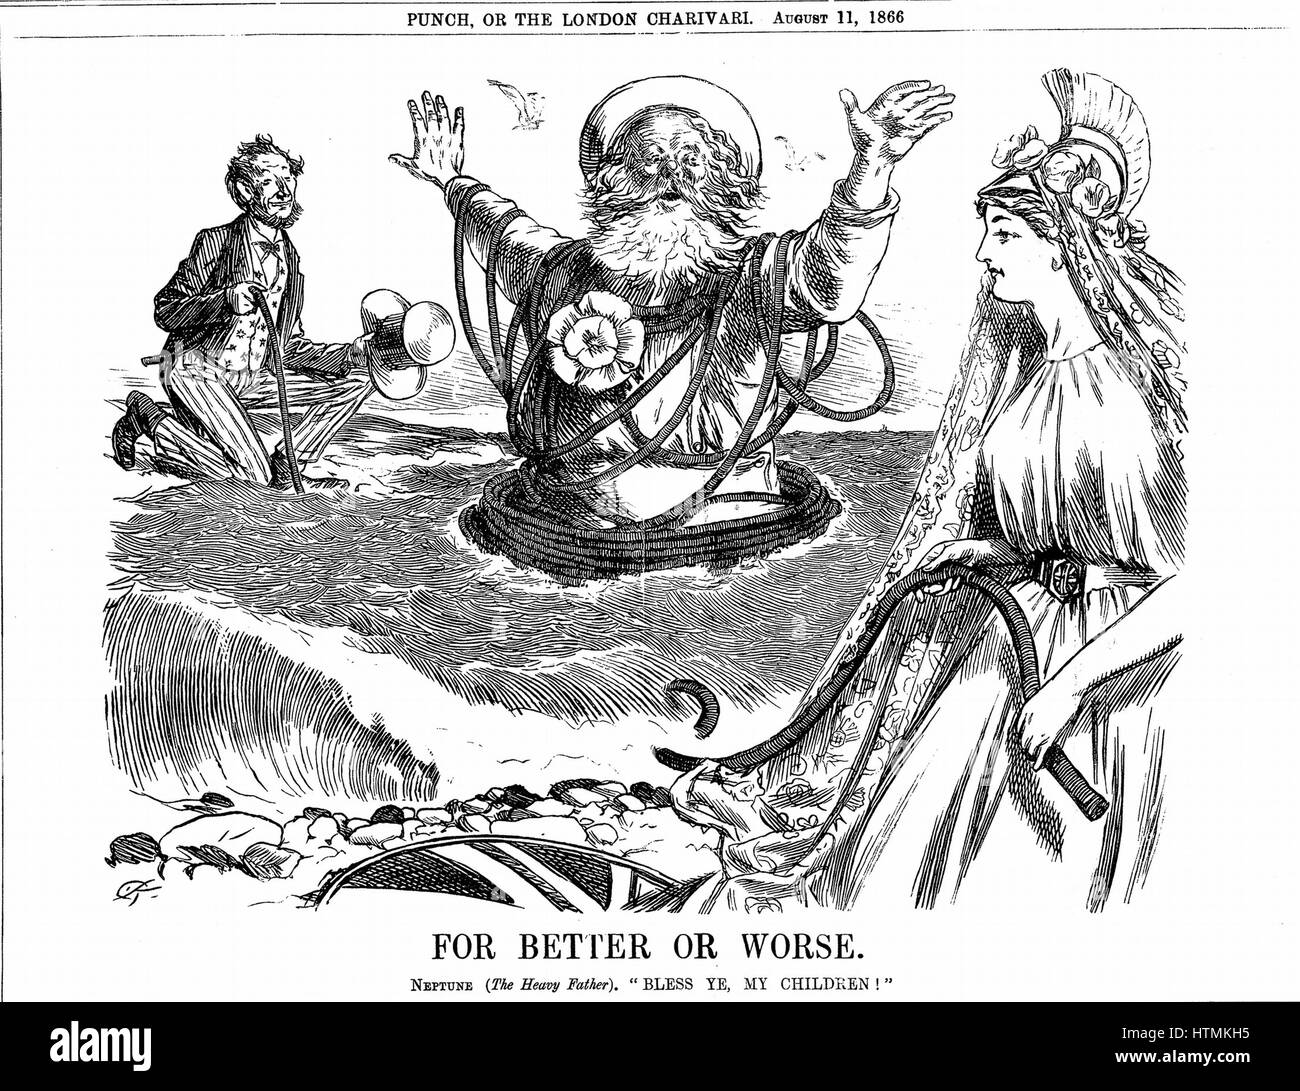 Atlantic Telegraph: Padre Neptuno bendición Britannia y el Tío Sam en el éxito de la colocación del cable telegráfico del Atlántico. Cartoon 'Punch' de Londres el 11 de agosto de 1866. Foto de stock